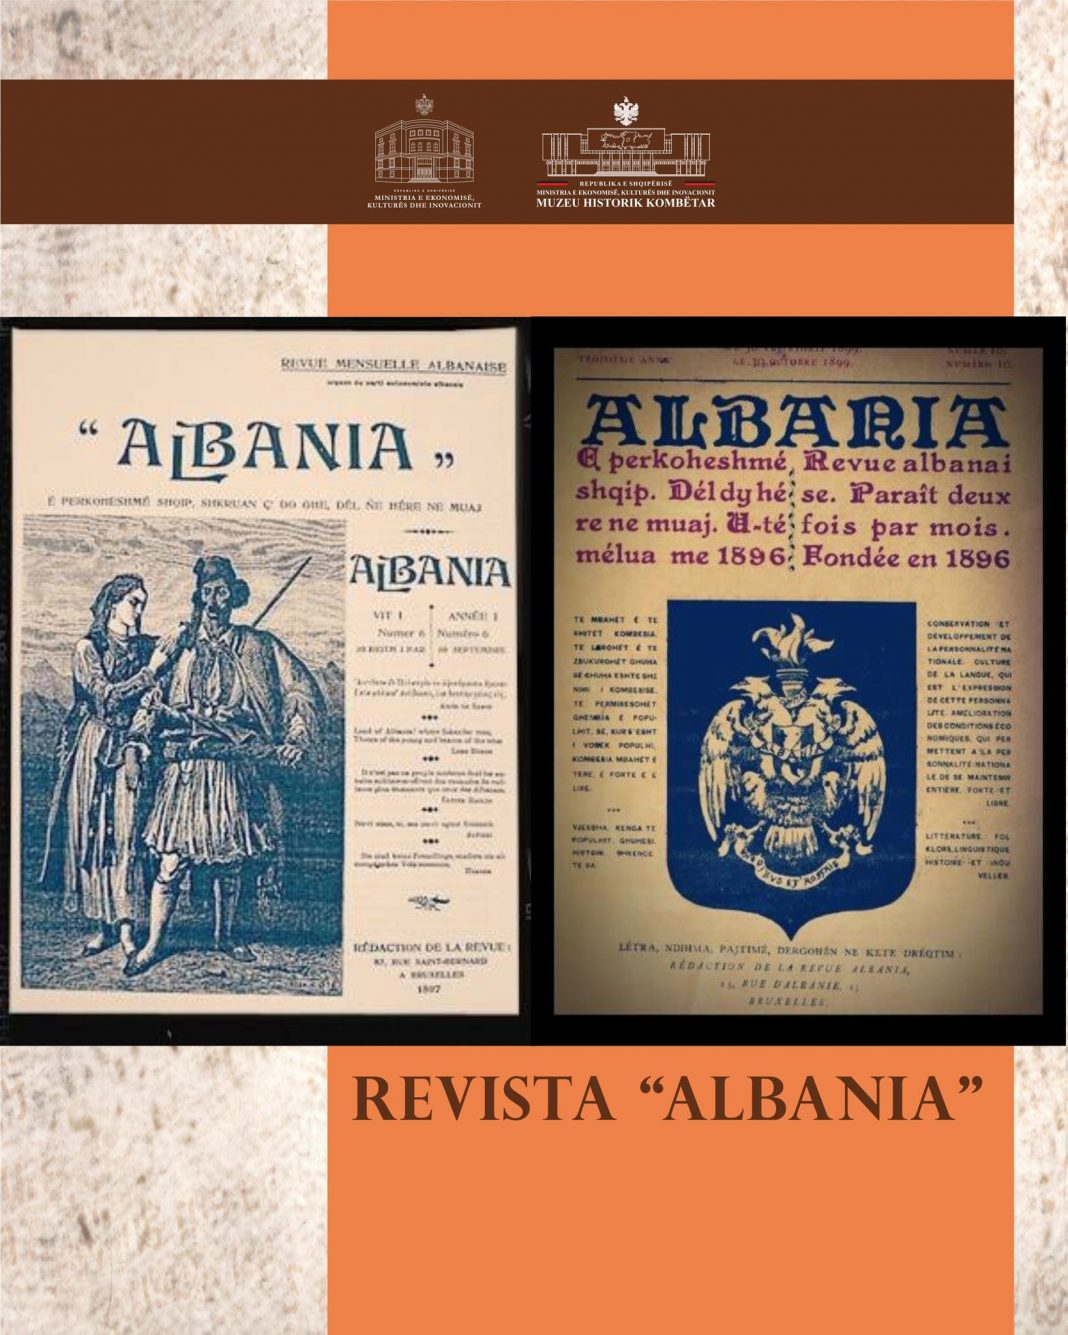 127-vjetori i revistës “Albania” të Faik Konicës